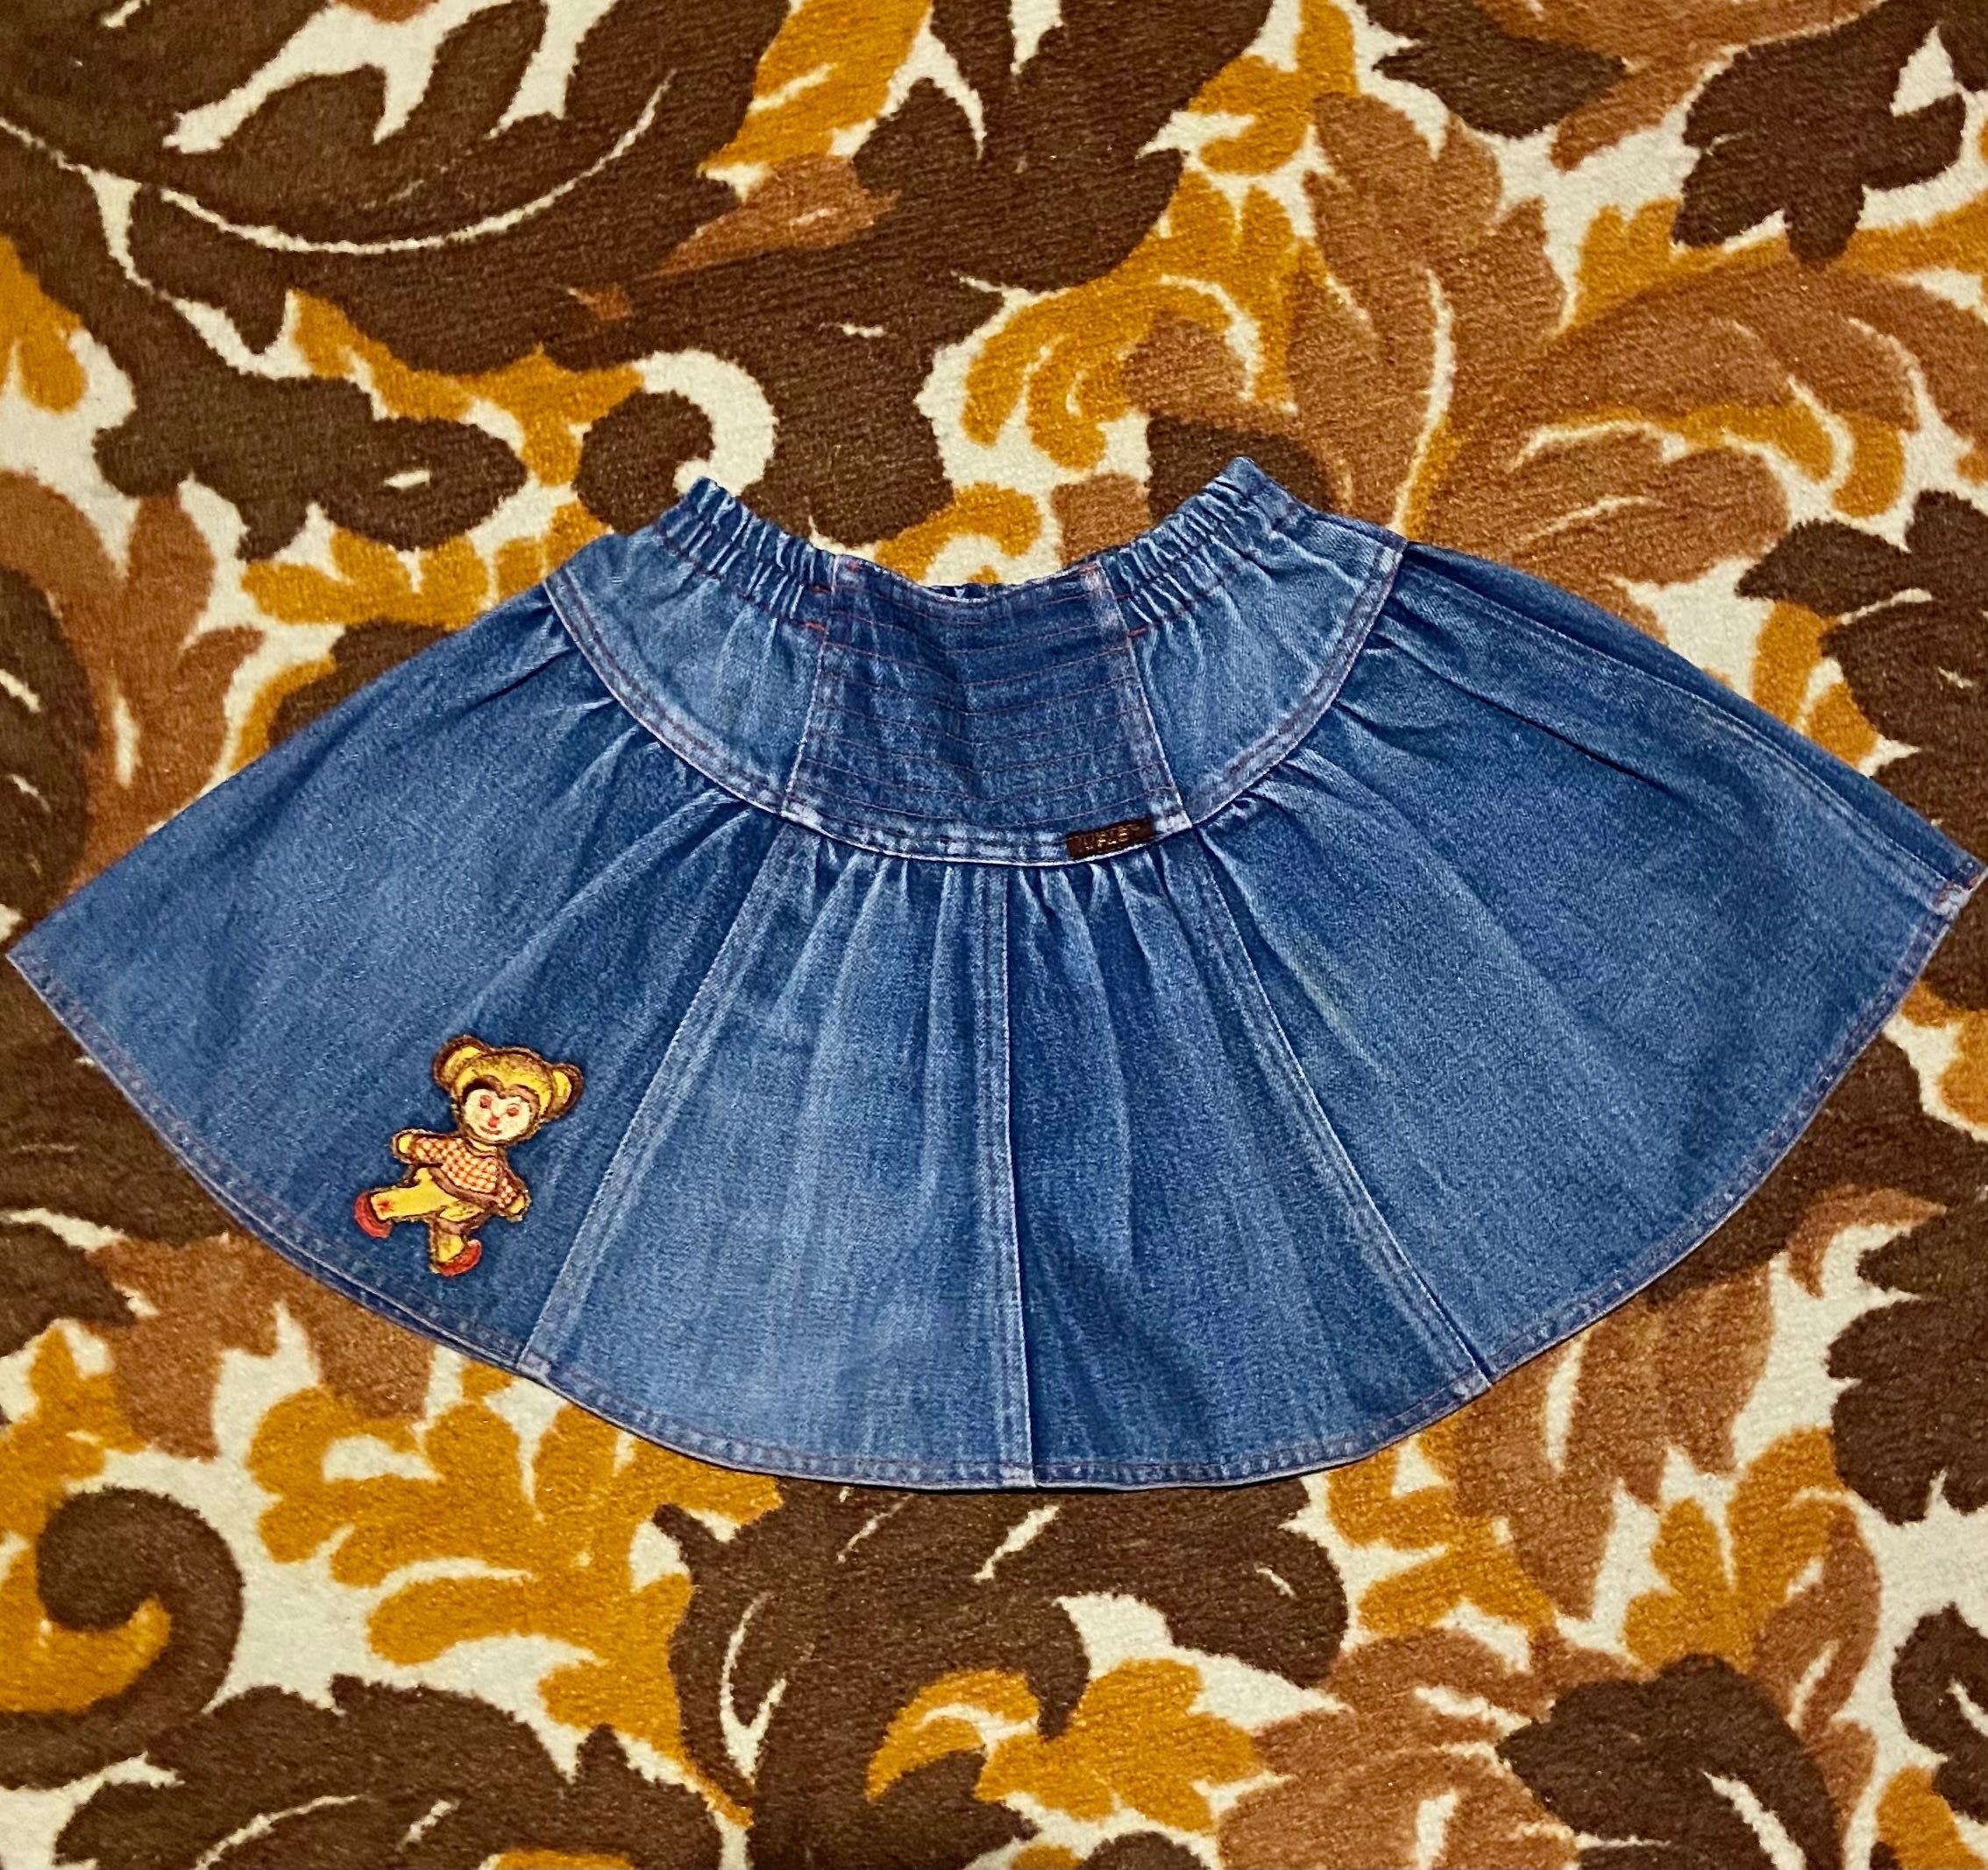 Джинсовая юбка на девочку 5-6 лет